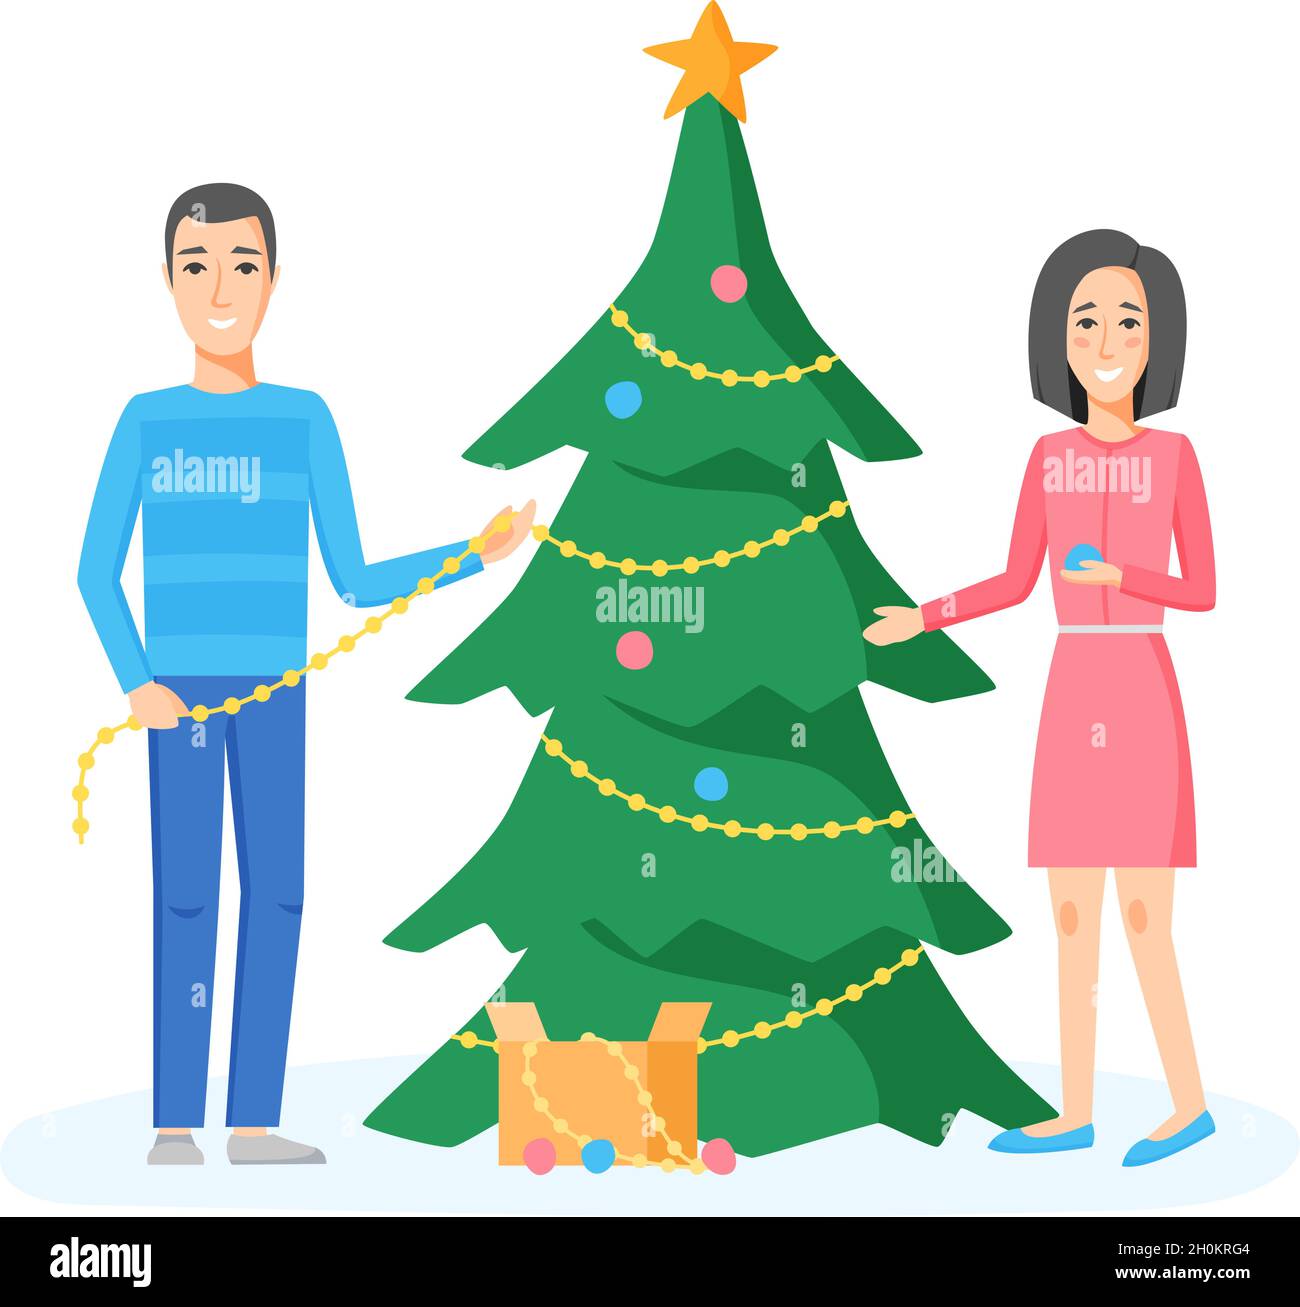 Familie dekorieren Weihnachtsbaum mit Kugeln, Perlen, Girlanden. Glückliches Paar, das sich auf die Feiertagsfeier vorbereitet. Vektorgrafik im flachen Stil. Stock Vektor